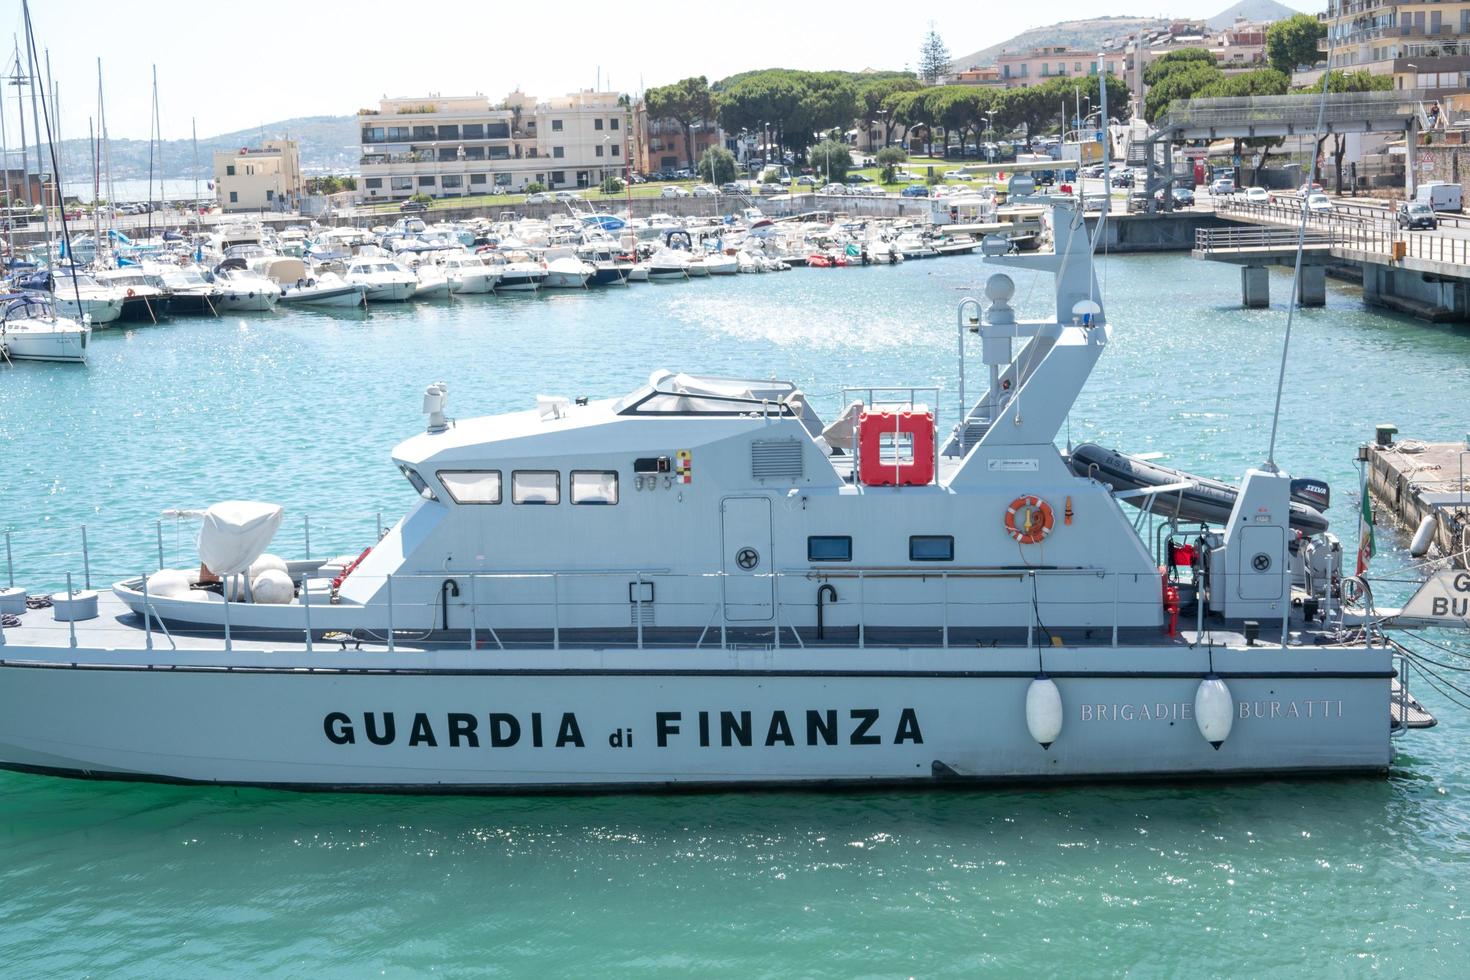 Formia, Italy, July 15, 2021 - Italian Financial Guard patrol boat photo